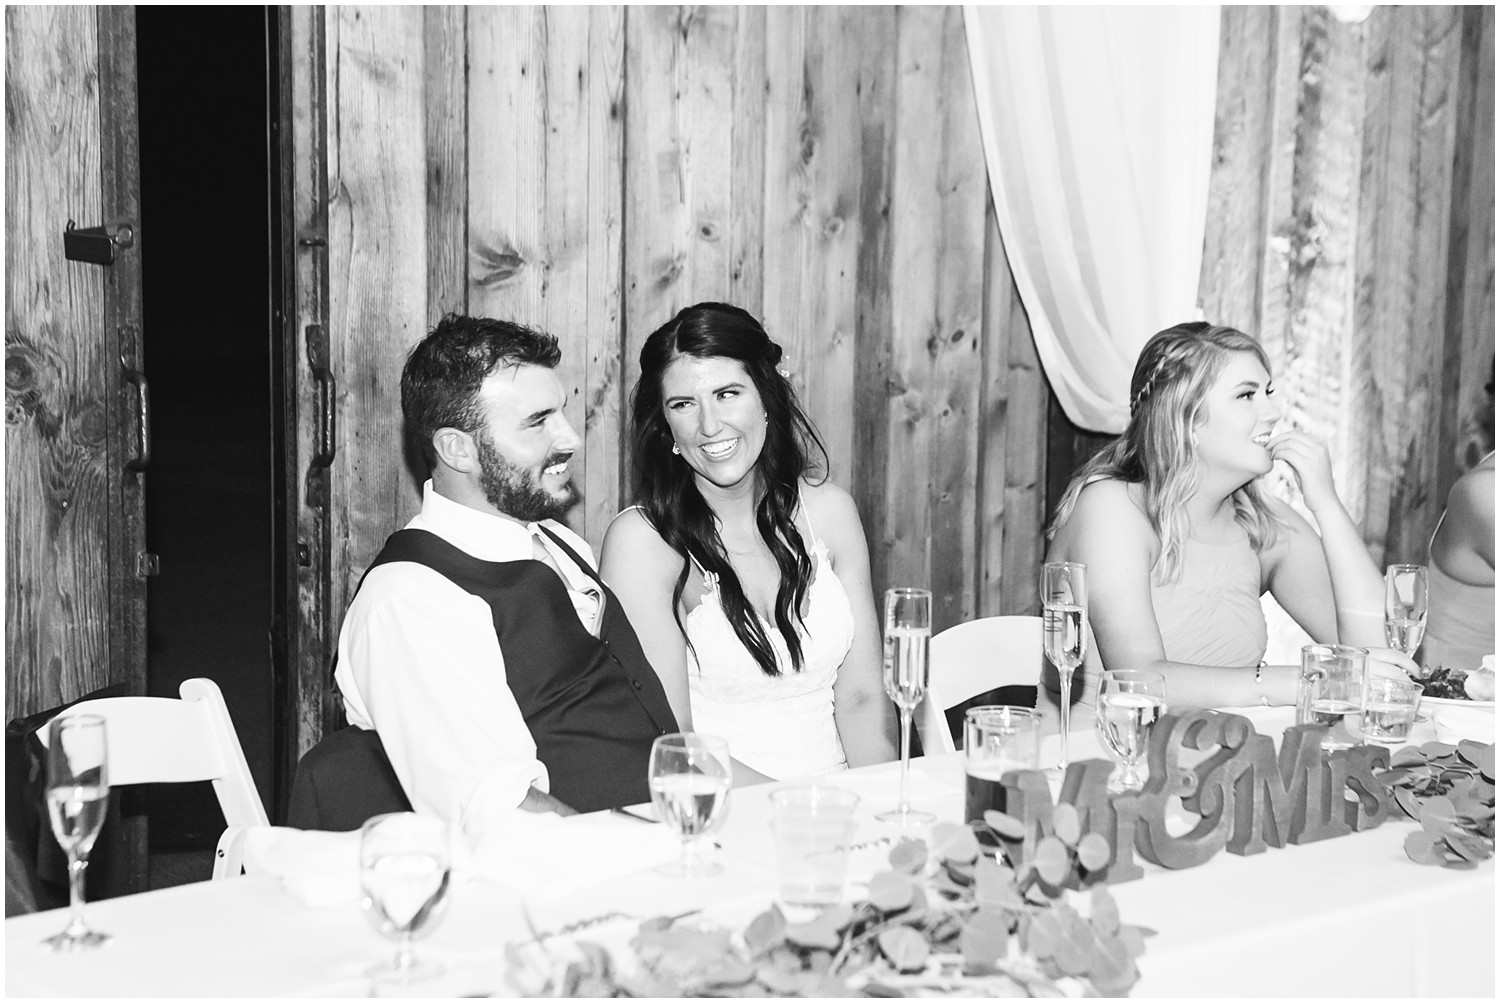 The Kelley Farm Wedding | Travis & Nicole